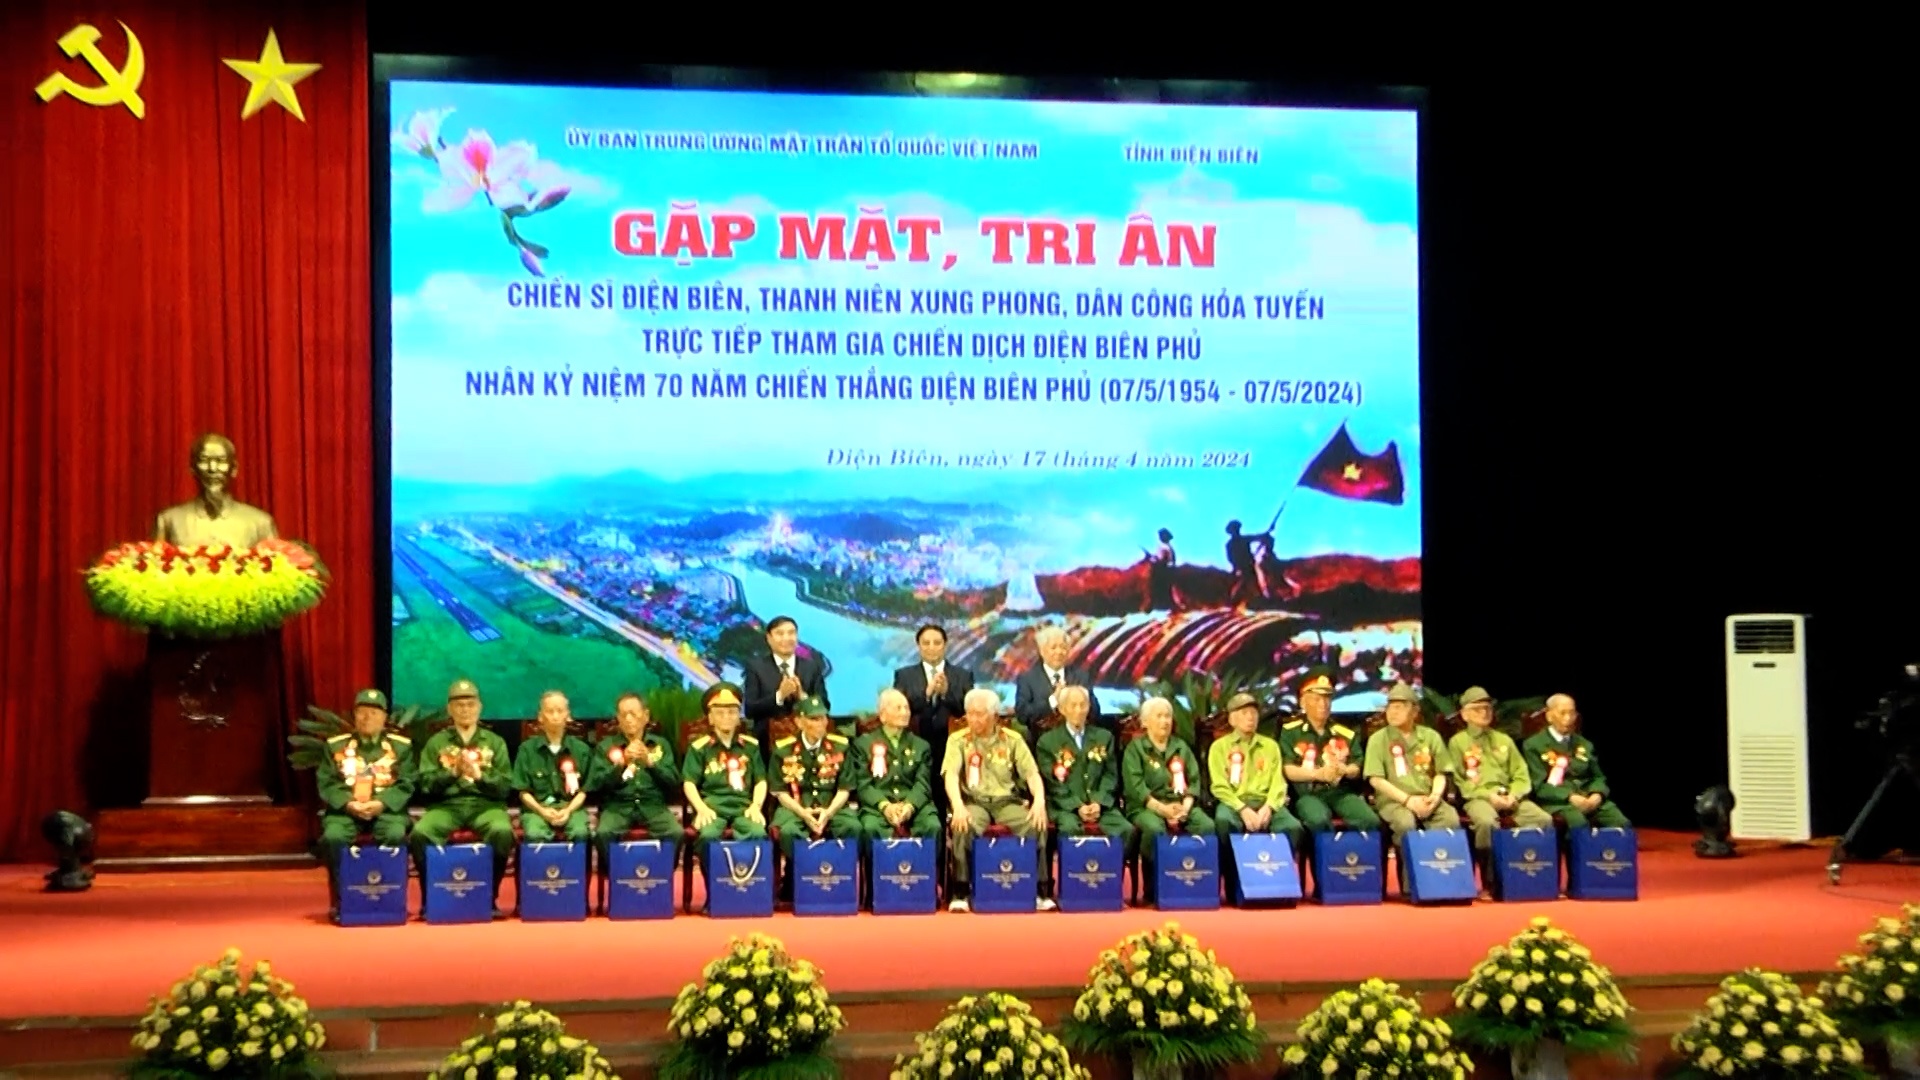 Đoàn đại biểu tỉnh Yên Bái dự gặp mặt tri ân các chiến sĩ Điện Biên, thanh niên xung phong, dân công hỏa tuyến